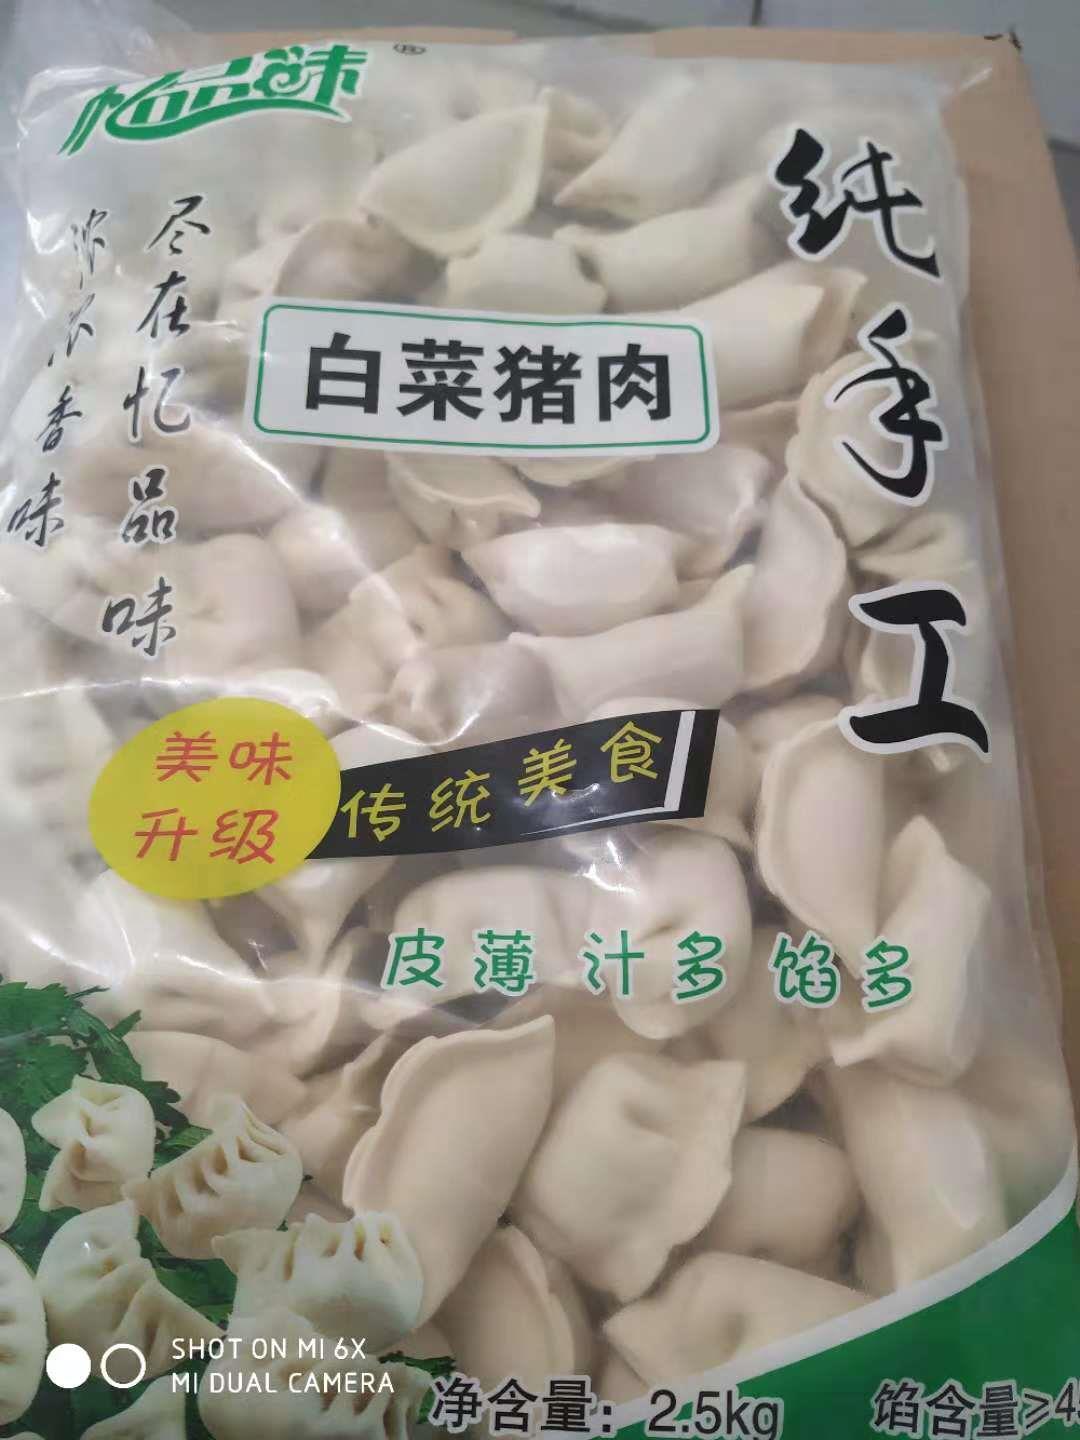 广西忆品味水饺 泗阳县忆品味食品有限公司